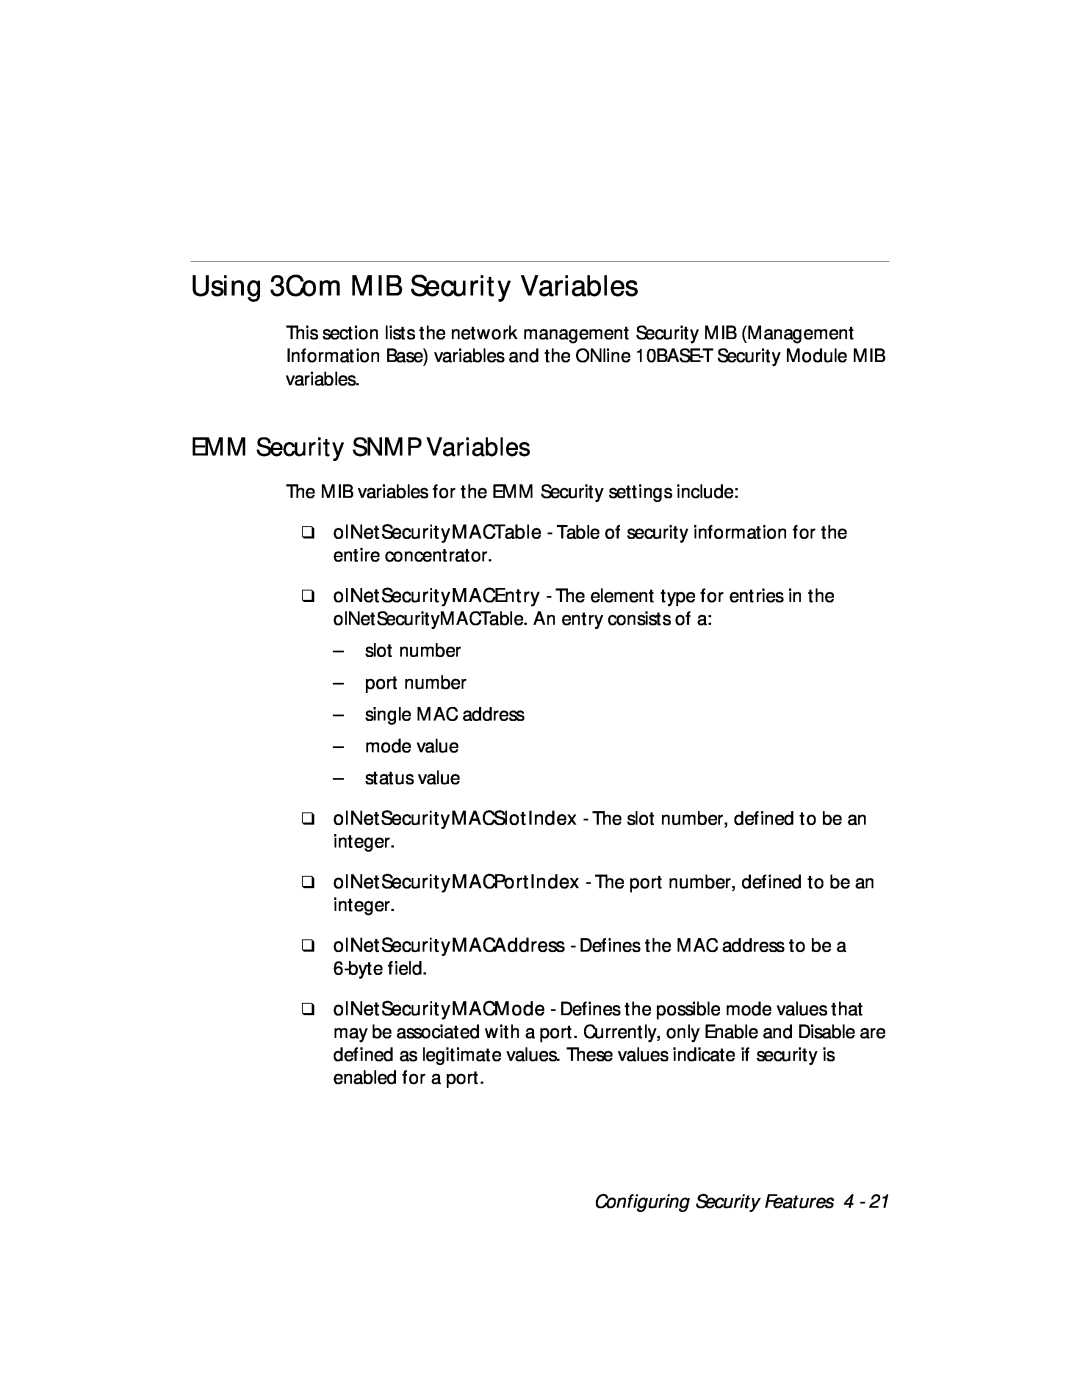 3Com 5112M-TPLS Using 3Com MIB Security Variables, EMM Security SNMP Variables, Configuring Security Features 4 